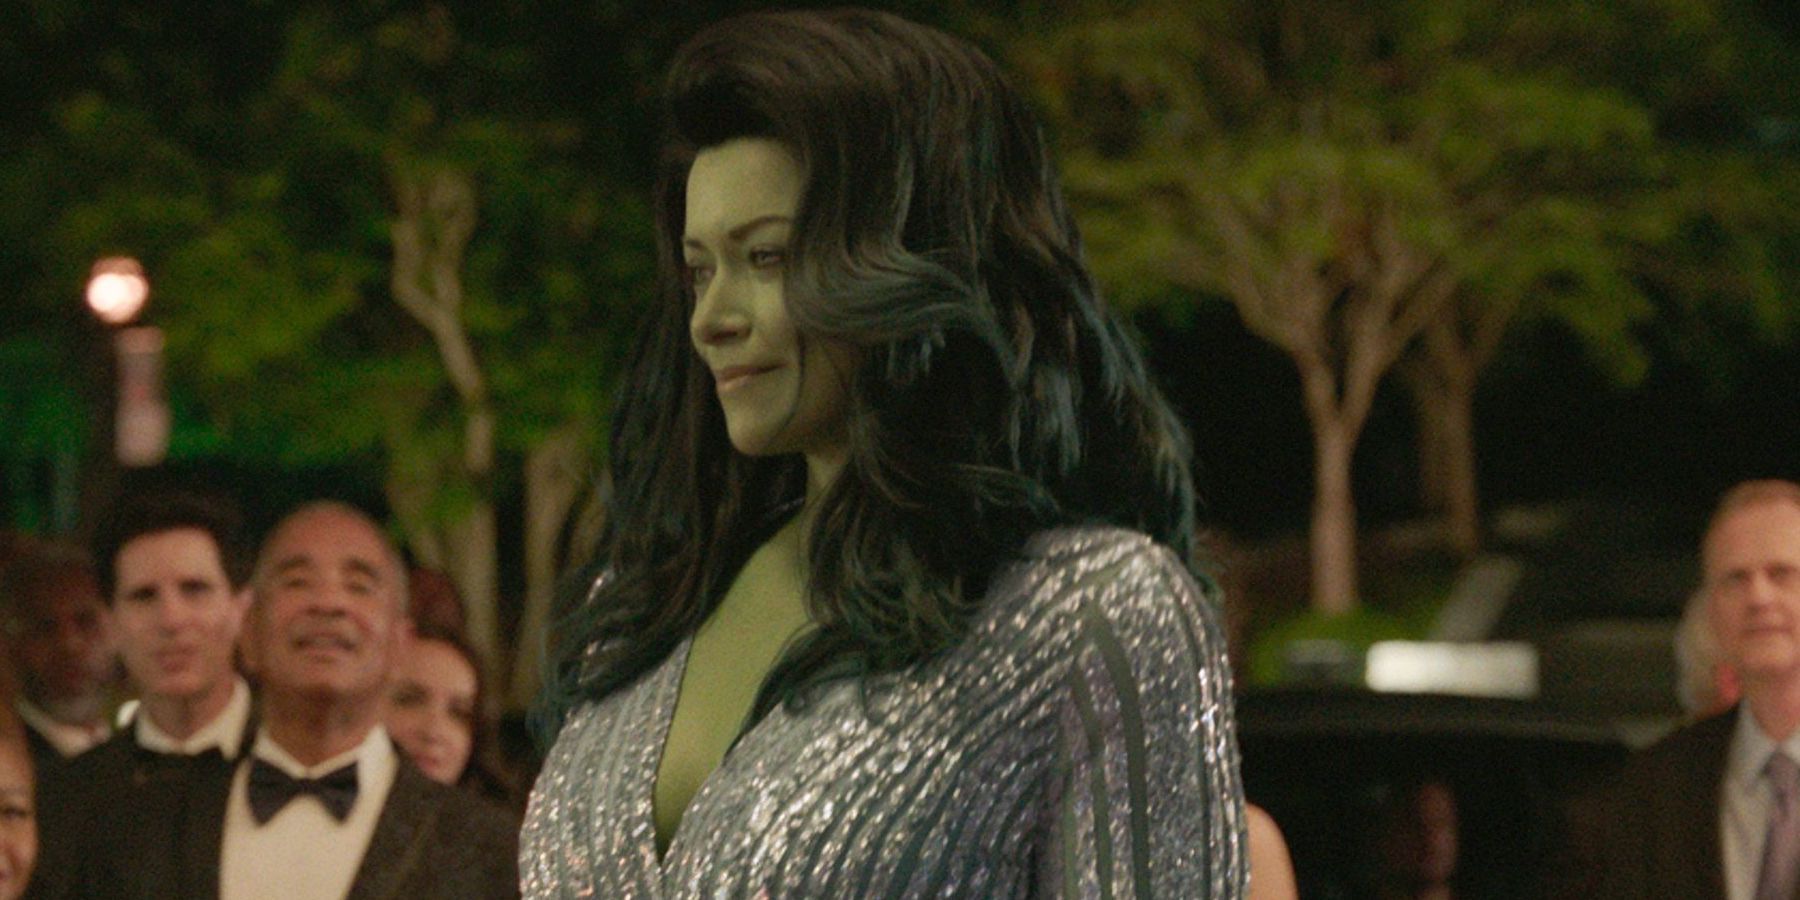 She-Hulk at the Gala